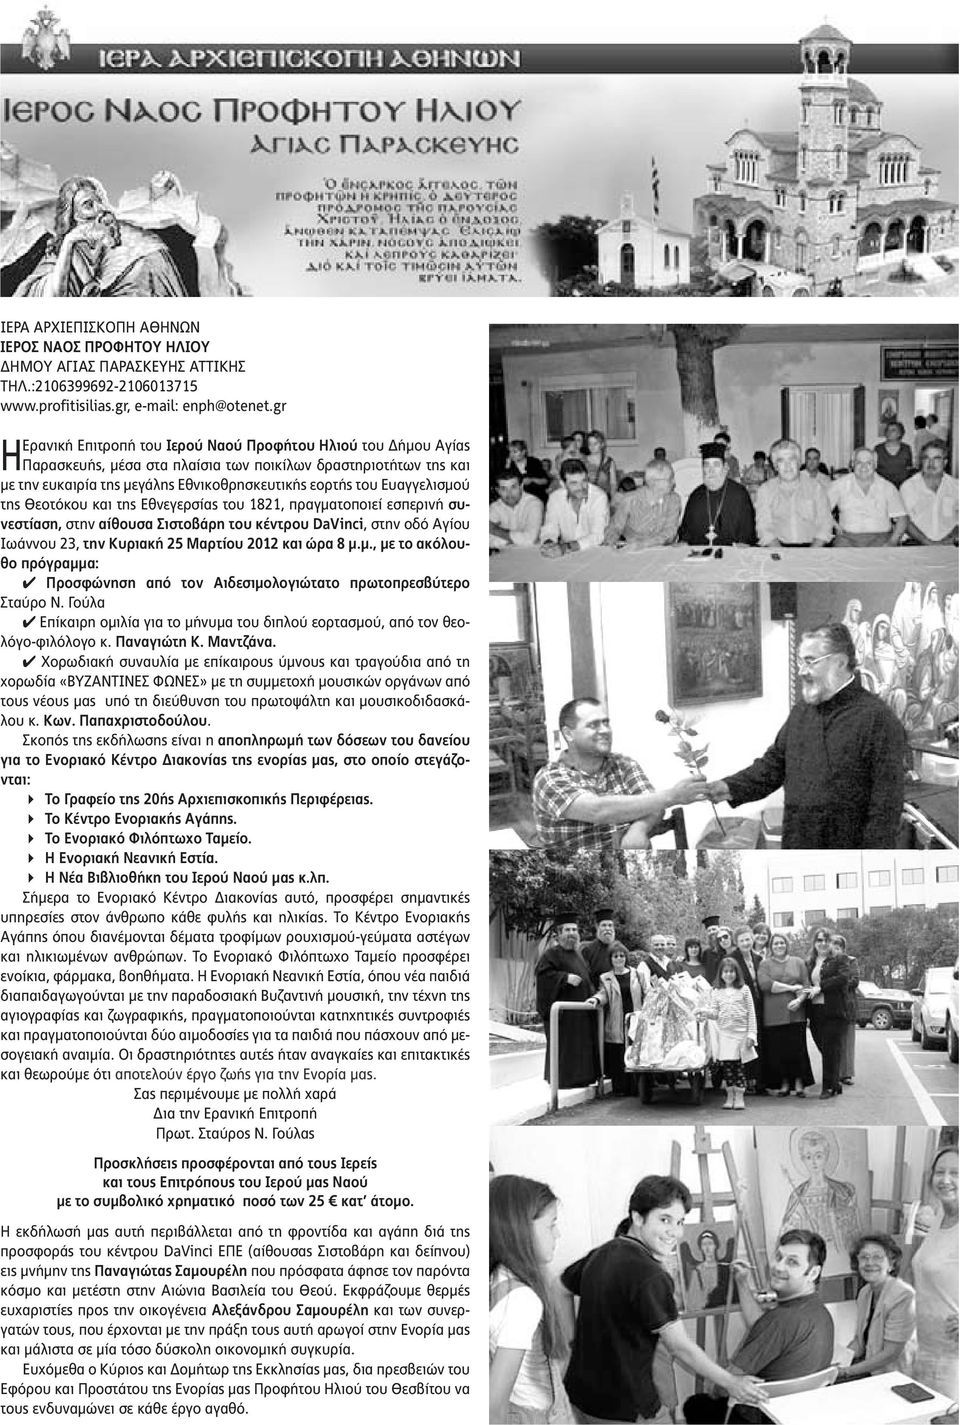 Ευαγγελισμού της Θεοτόκου και της Εθνεγερσίας του 1821, πραγματοποιεί εσπερινή συνεστίαση, στην αίθουσα Σιστοβάρη του κέντρου DaVinci, στην οδό Αγίου Ιωάννου 23, την Κυριακή 25 Μαρτίου 2012 και ώρα 8